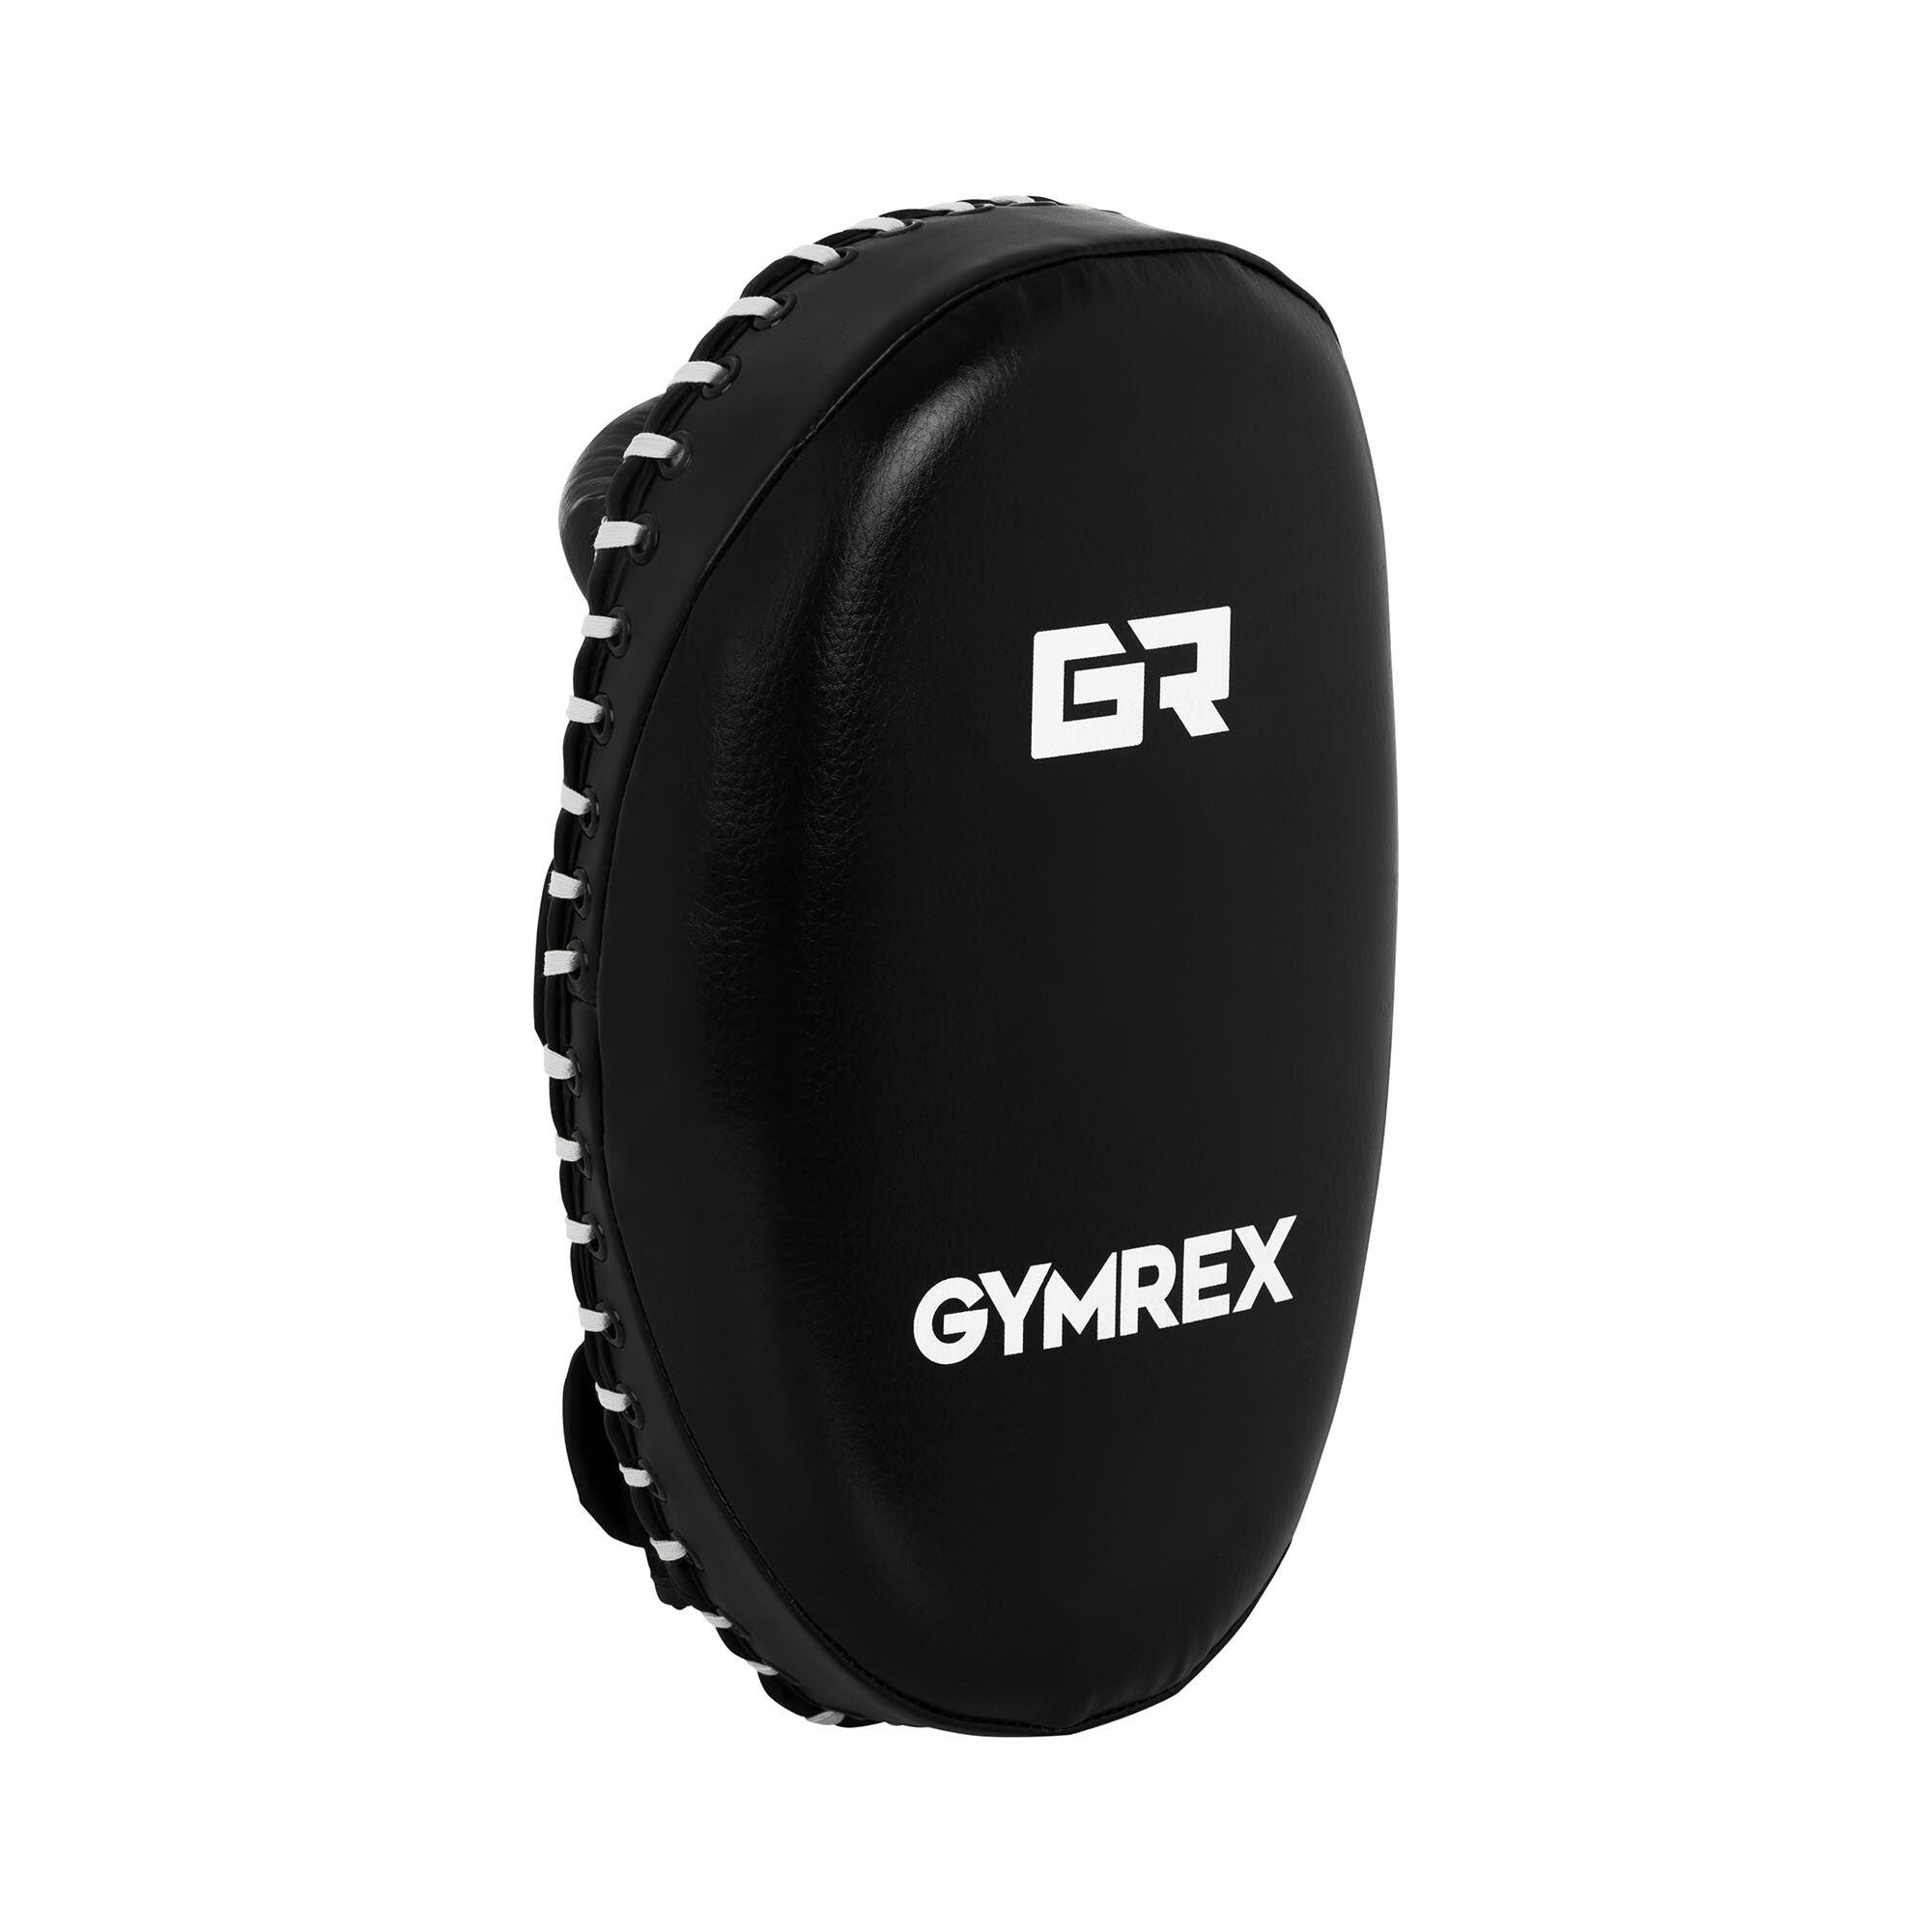 Gymrex Boxing Kick Shield - 350 x 210 mm - black and white GR-HT 21W